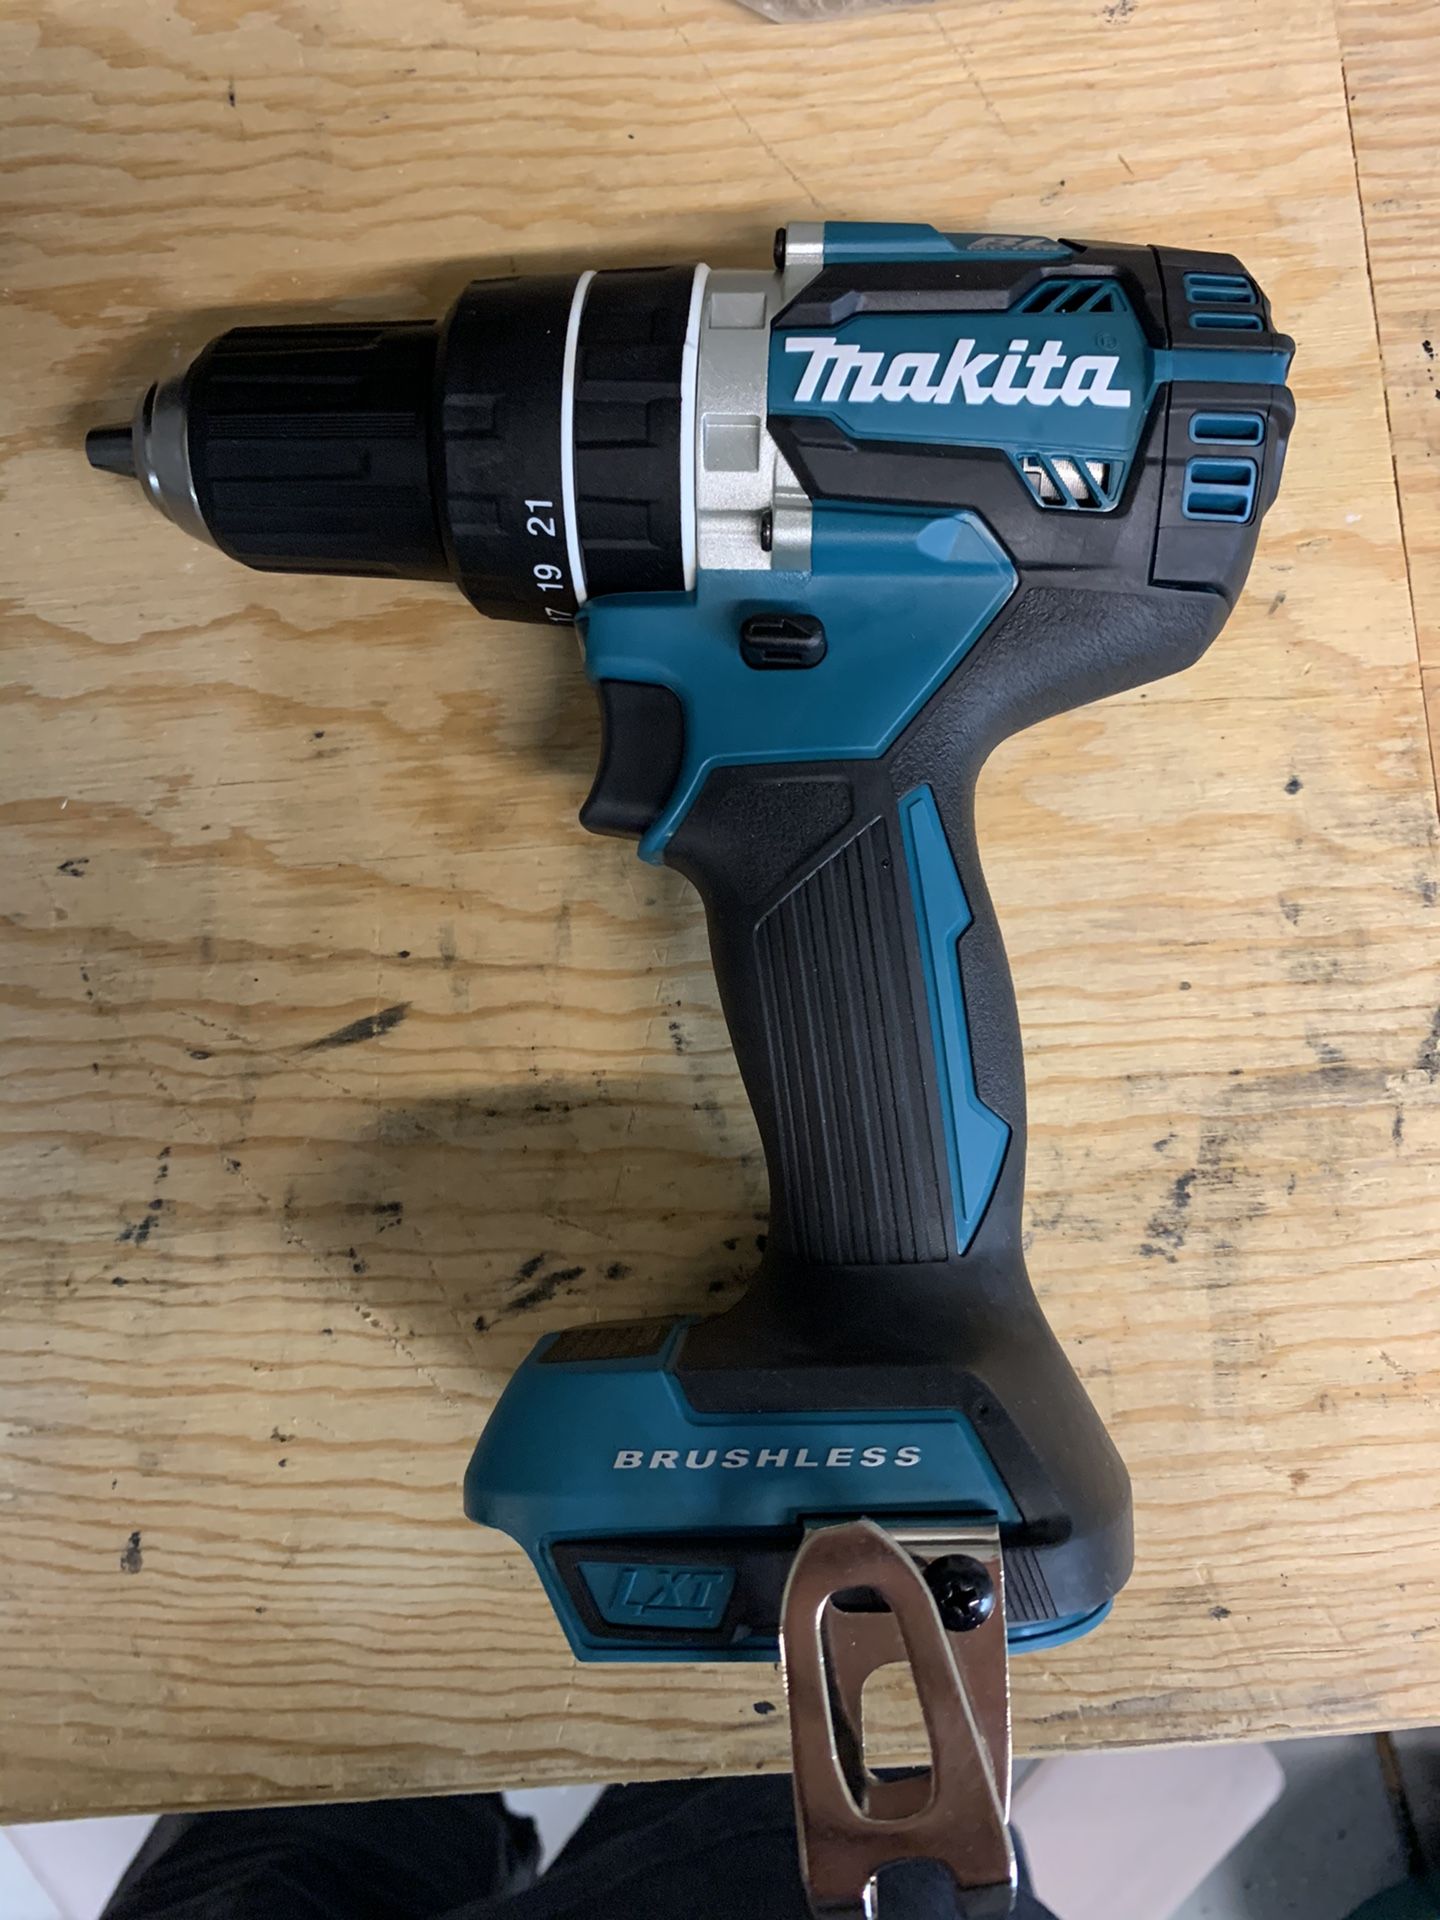 Makita 18v lxt brushless hammer drill